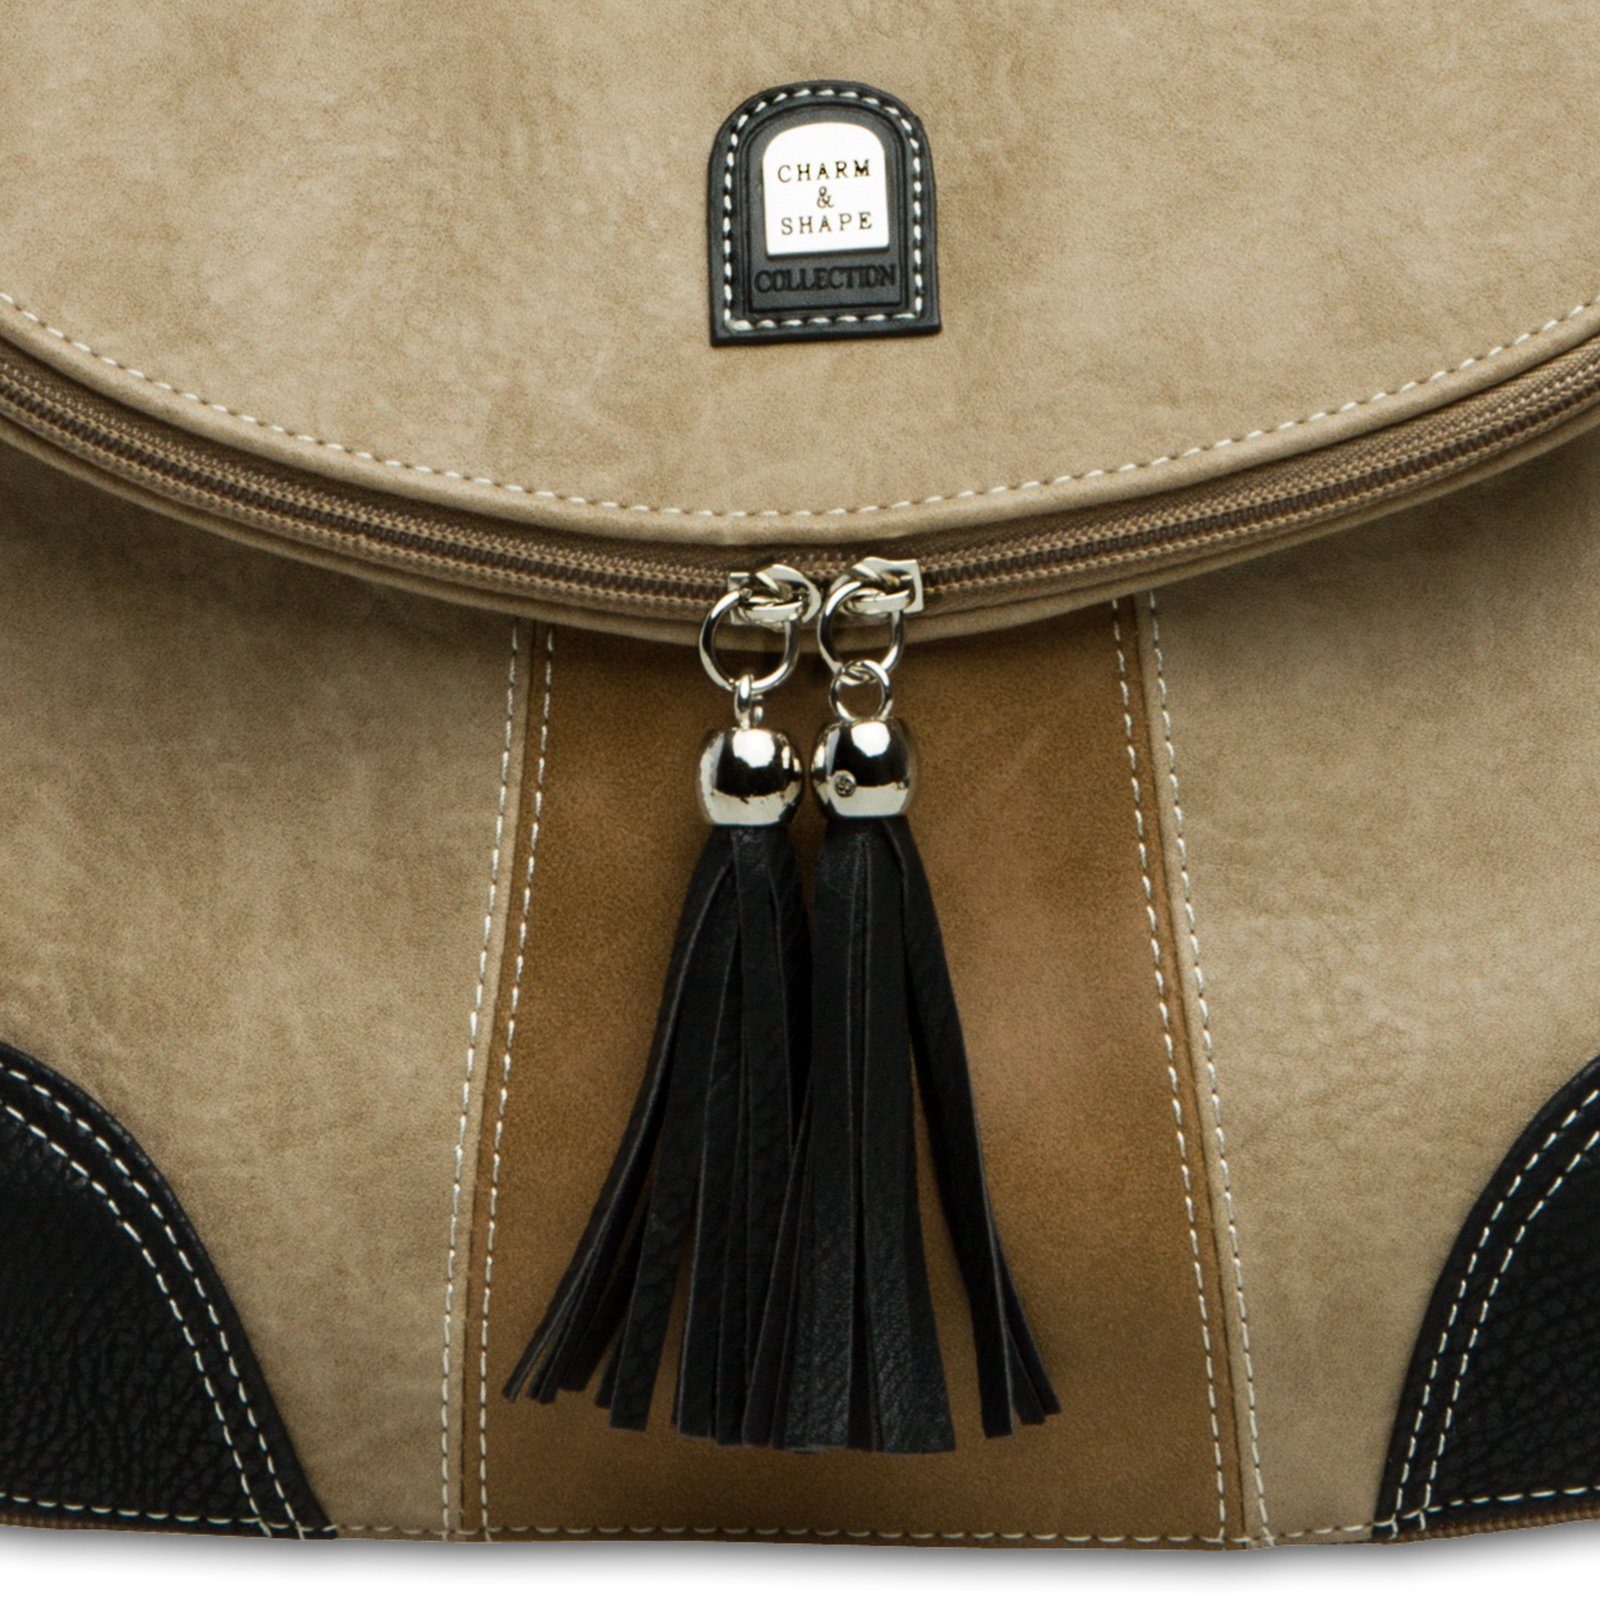 Caspar Umhängetasche Damen Modelle schwarz braun Rucksack TS1028 #15105 beige Umhängetasche - diverse Umhängetasche Handtasche Tasche